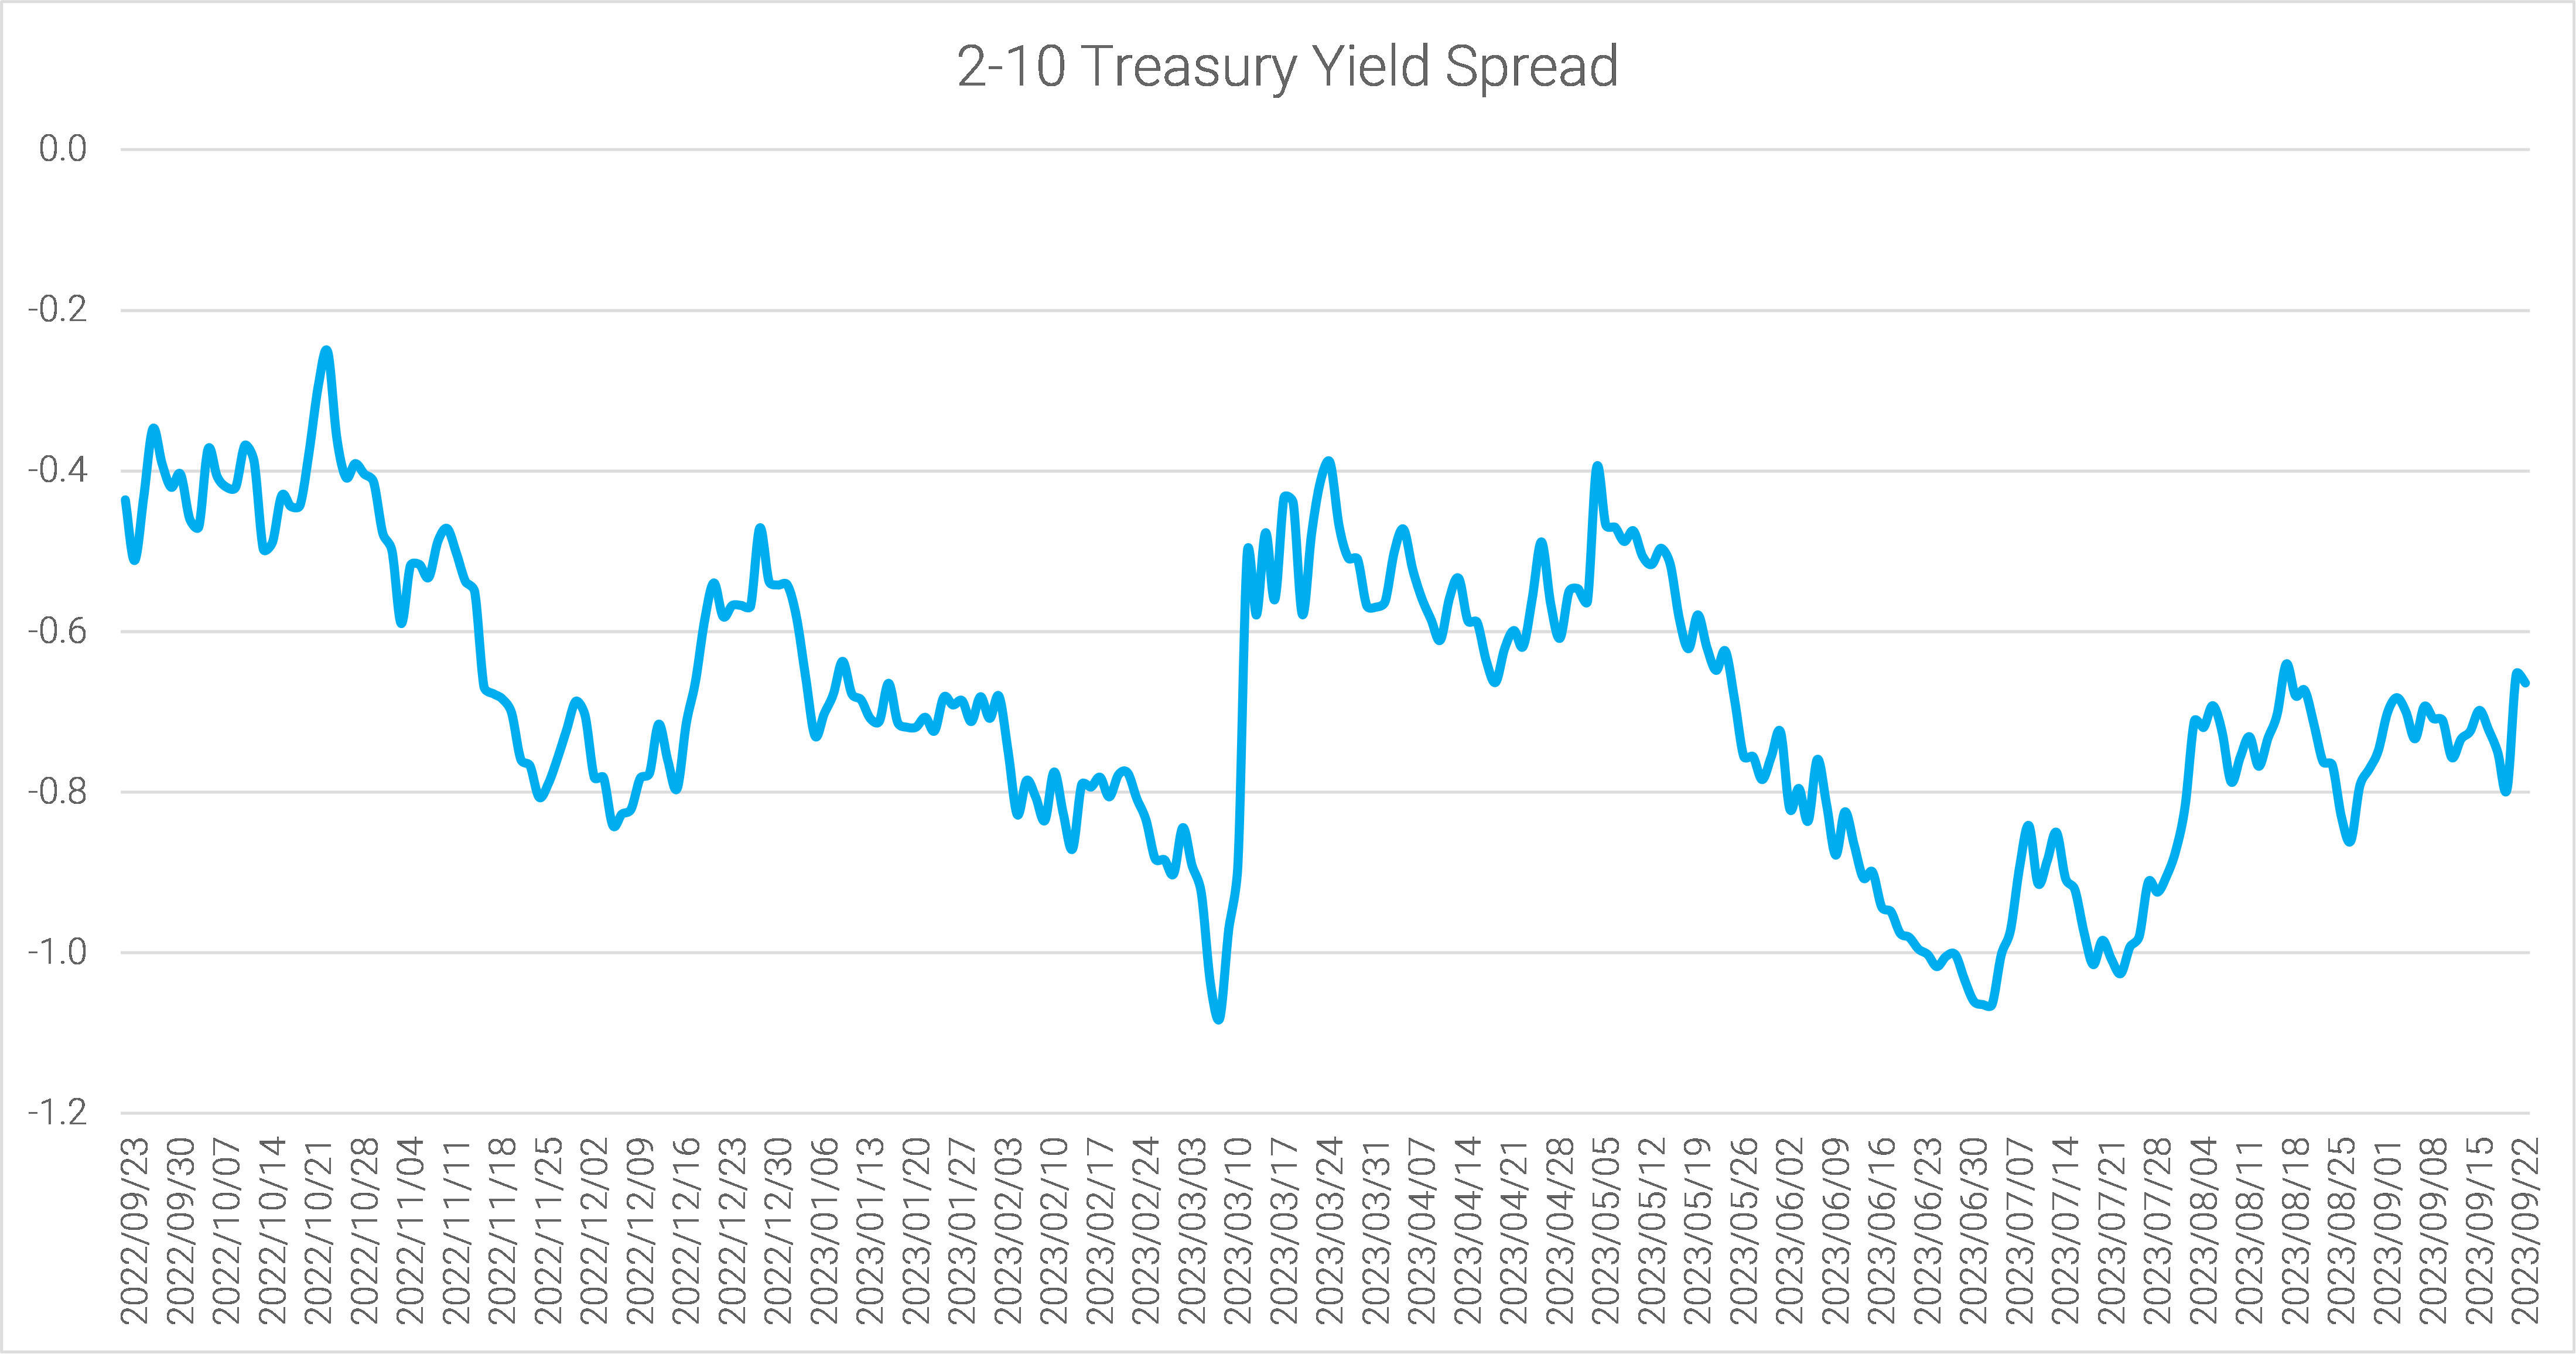 14-the-2-10-spread-narrowed-last-week-to-minus-66bps